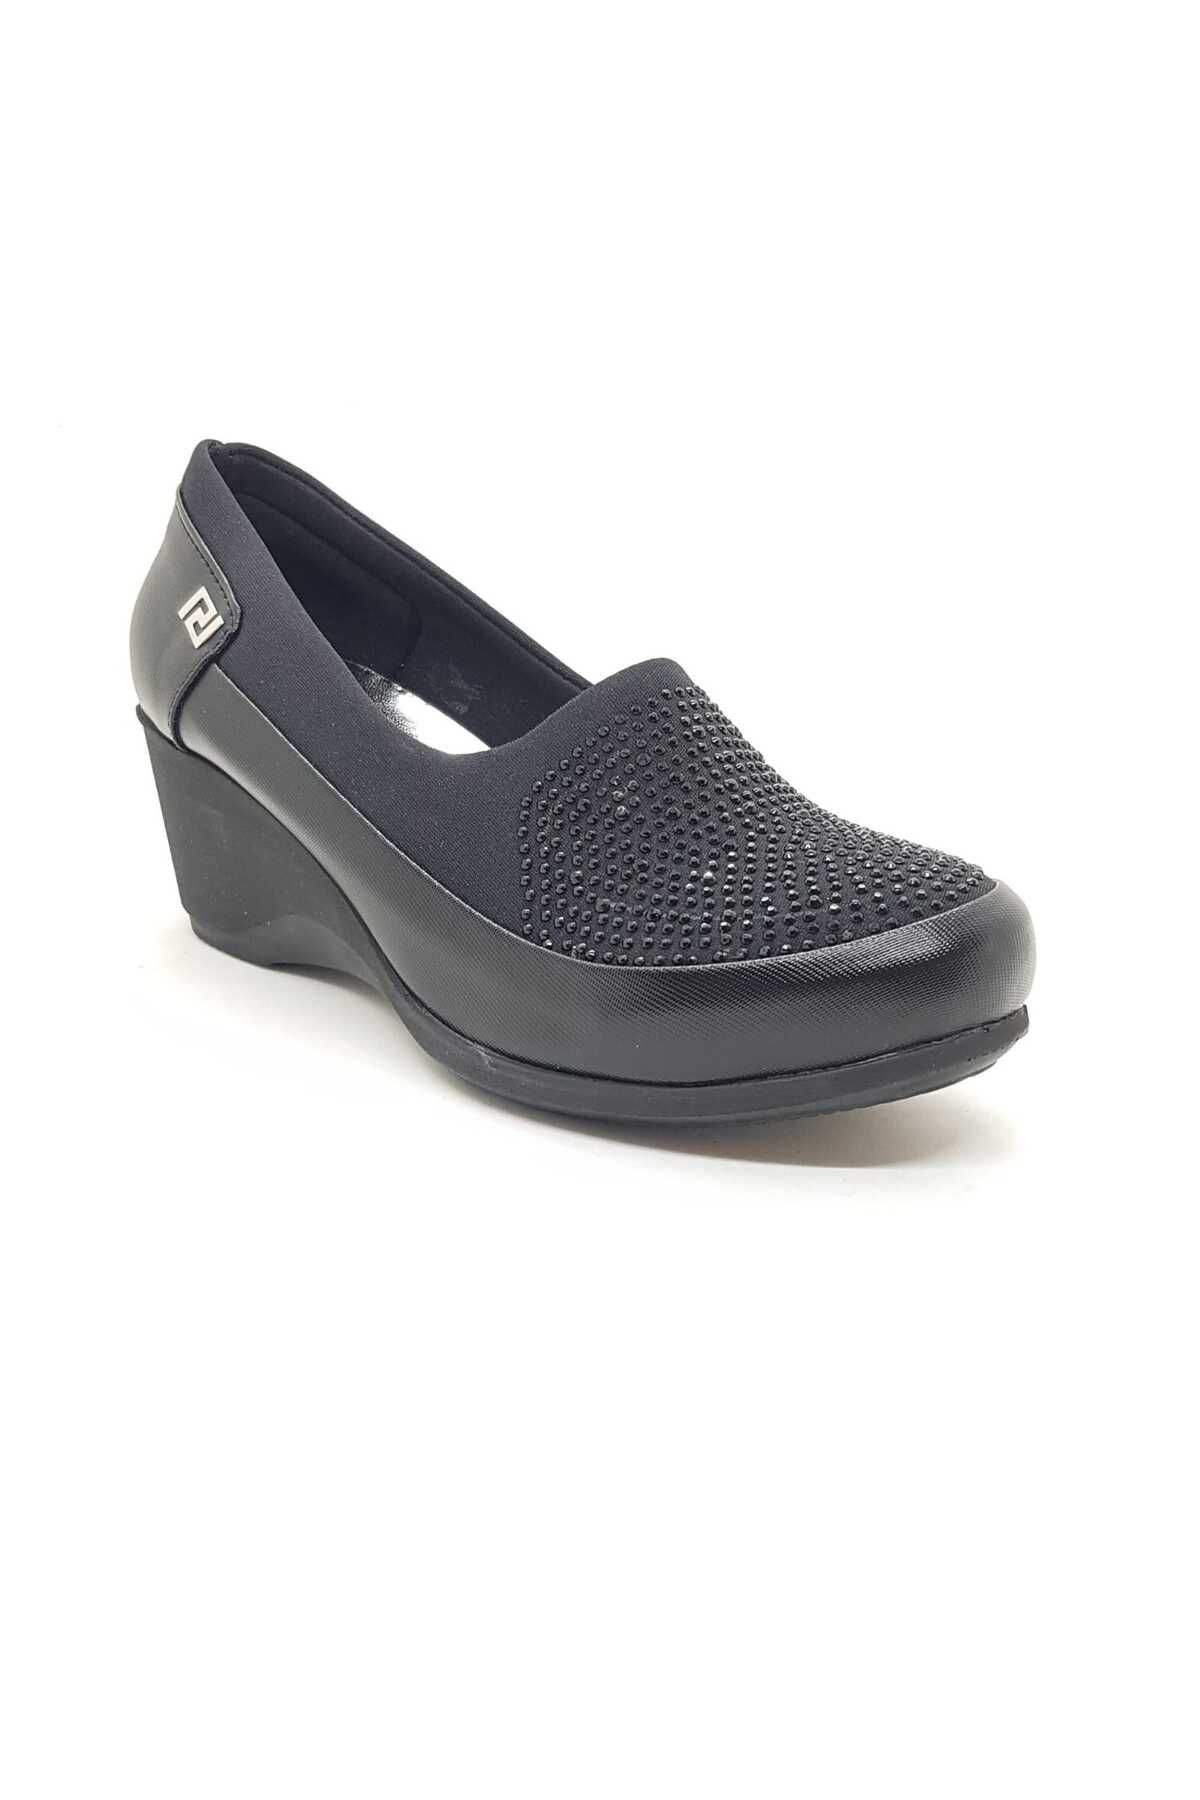 Neco dolgu topuk anne ayakkabısı taş detaylı streç üst malzeme hafif poli taban 5cm topuk boyu